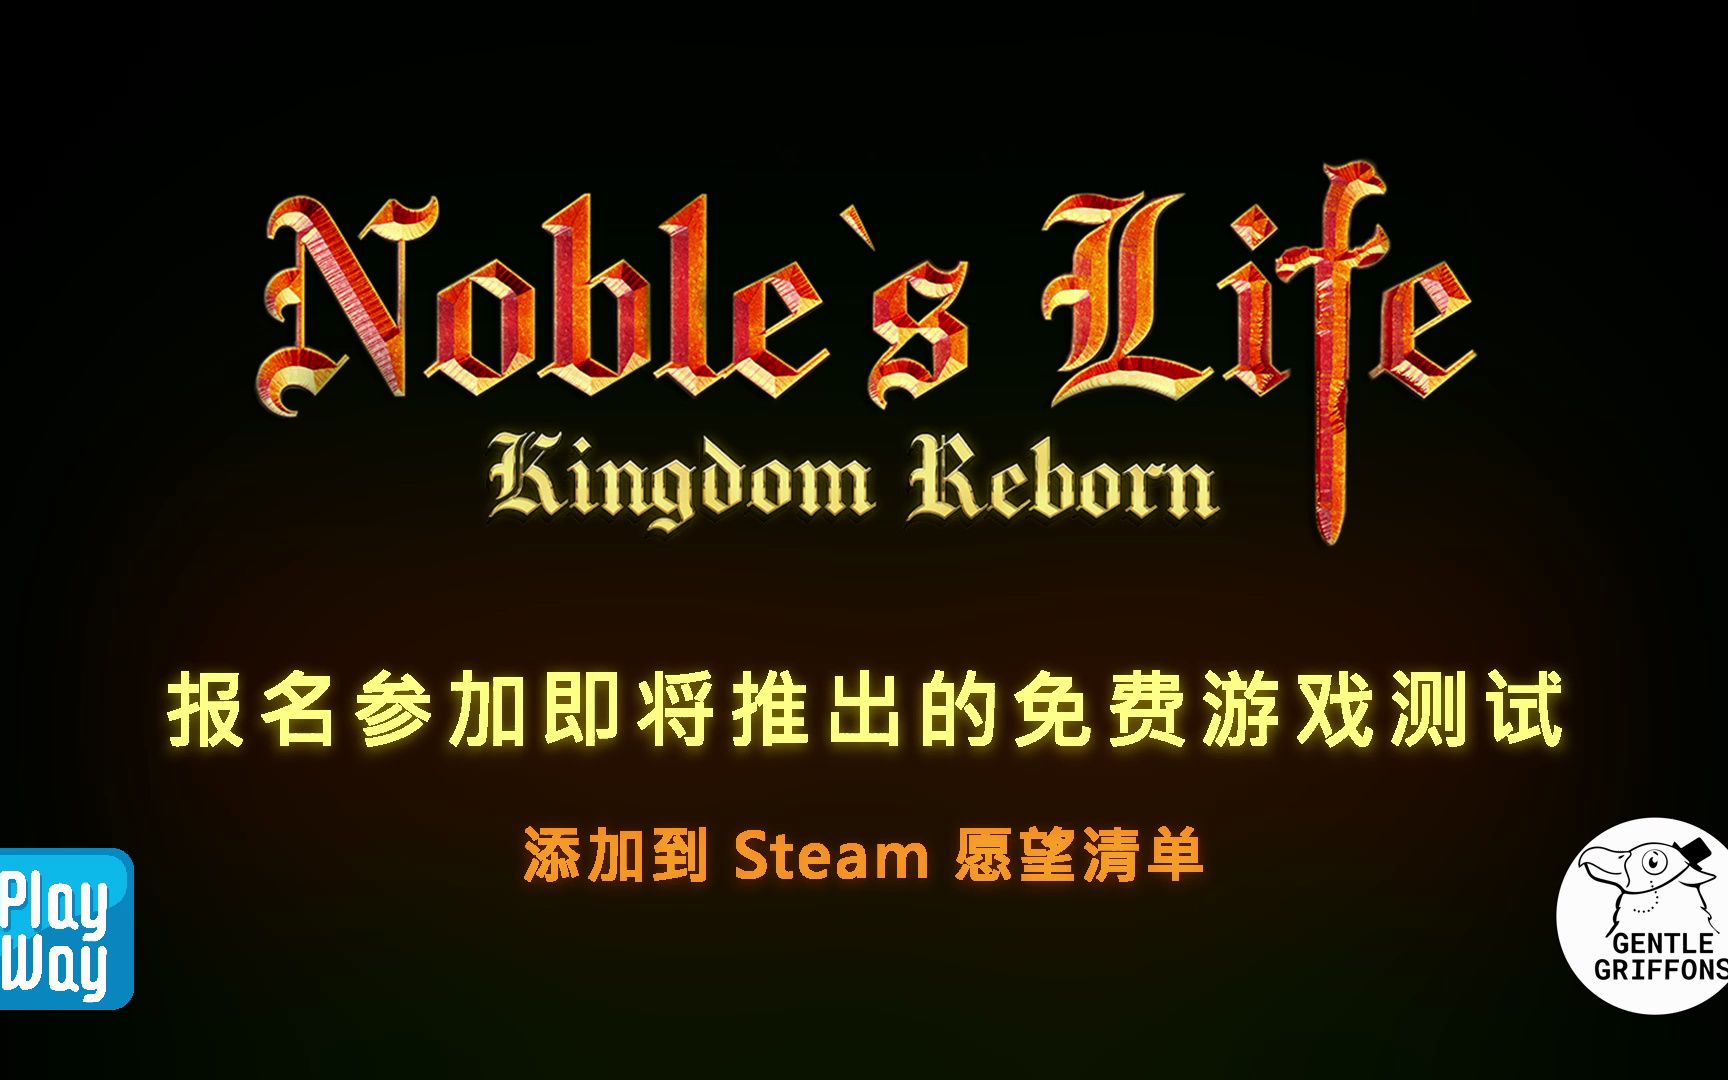 成为中世纪欧洲真正的中世纪贵族，角色扮演模拟游戏预览 - 免费 Steam 游戏测试即将推出 - Noble's Life: Kingdom Reborn